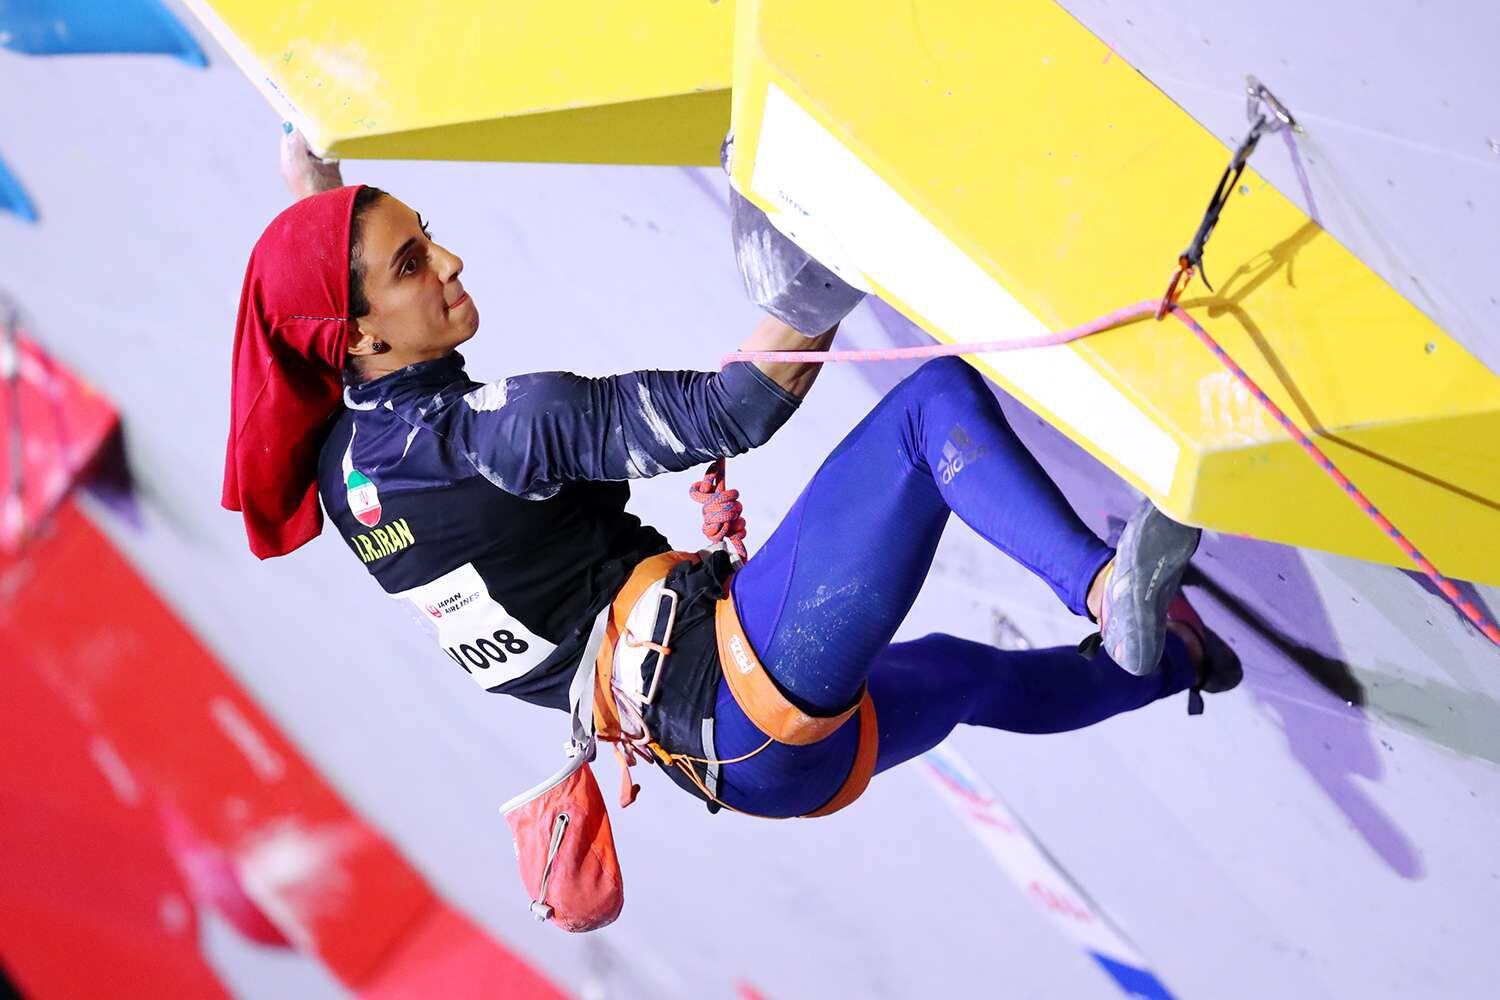  Estados Unidos criticó el miércoles el trato del gobierno iraní a la escaladora Elnaz Rekabi y advirtió que el mundo estaba mirando.